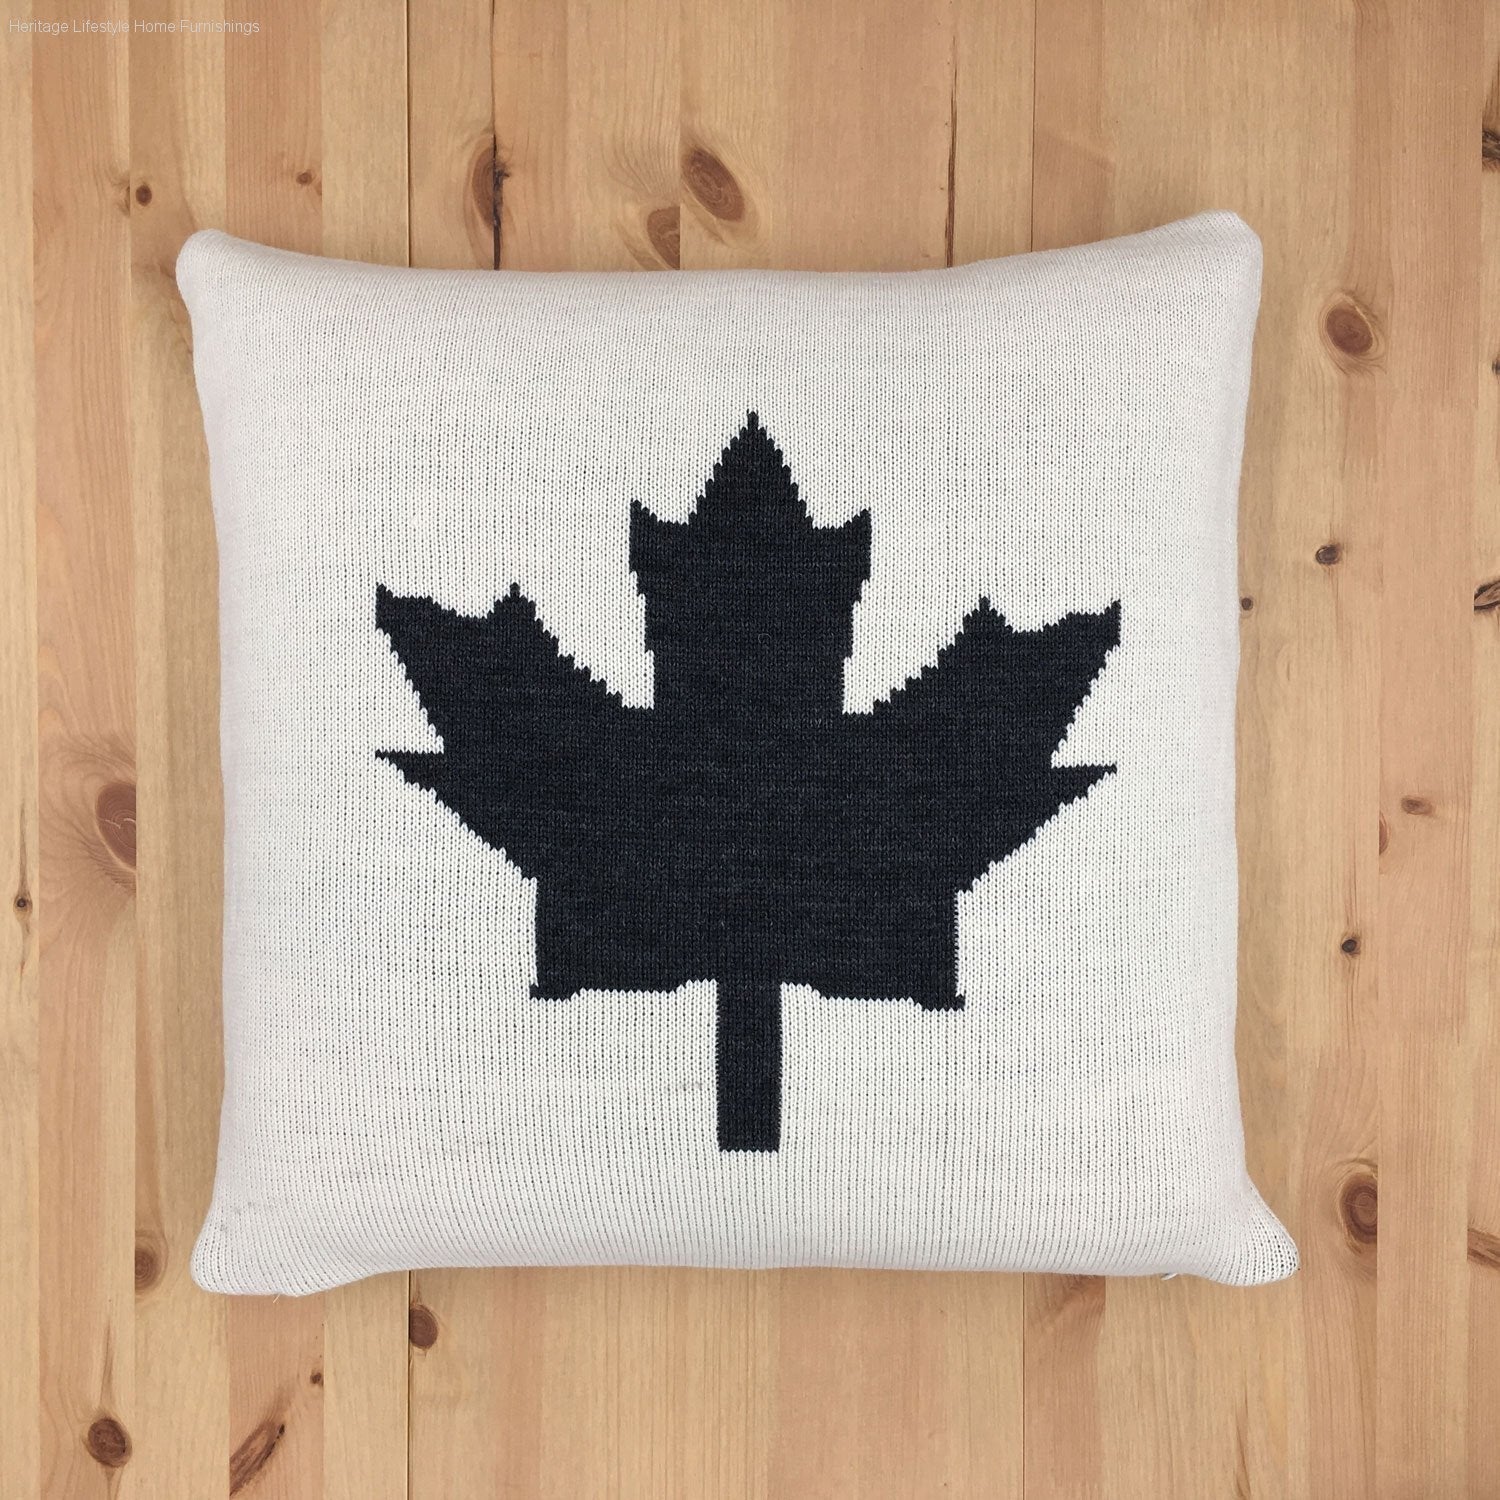 HLHF O Canada Knit Pillow Pillows & Throws Furniture Store Burlington Ontario Near Me 